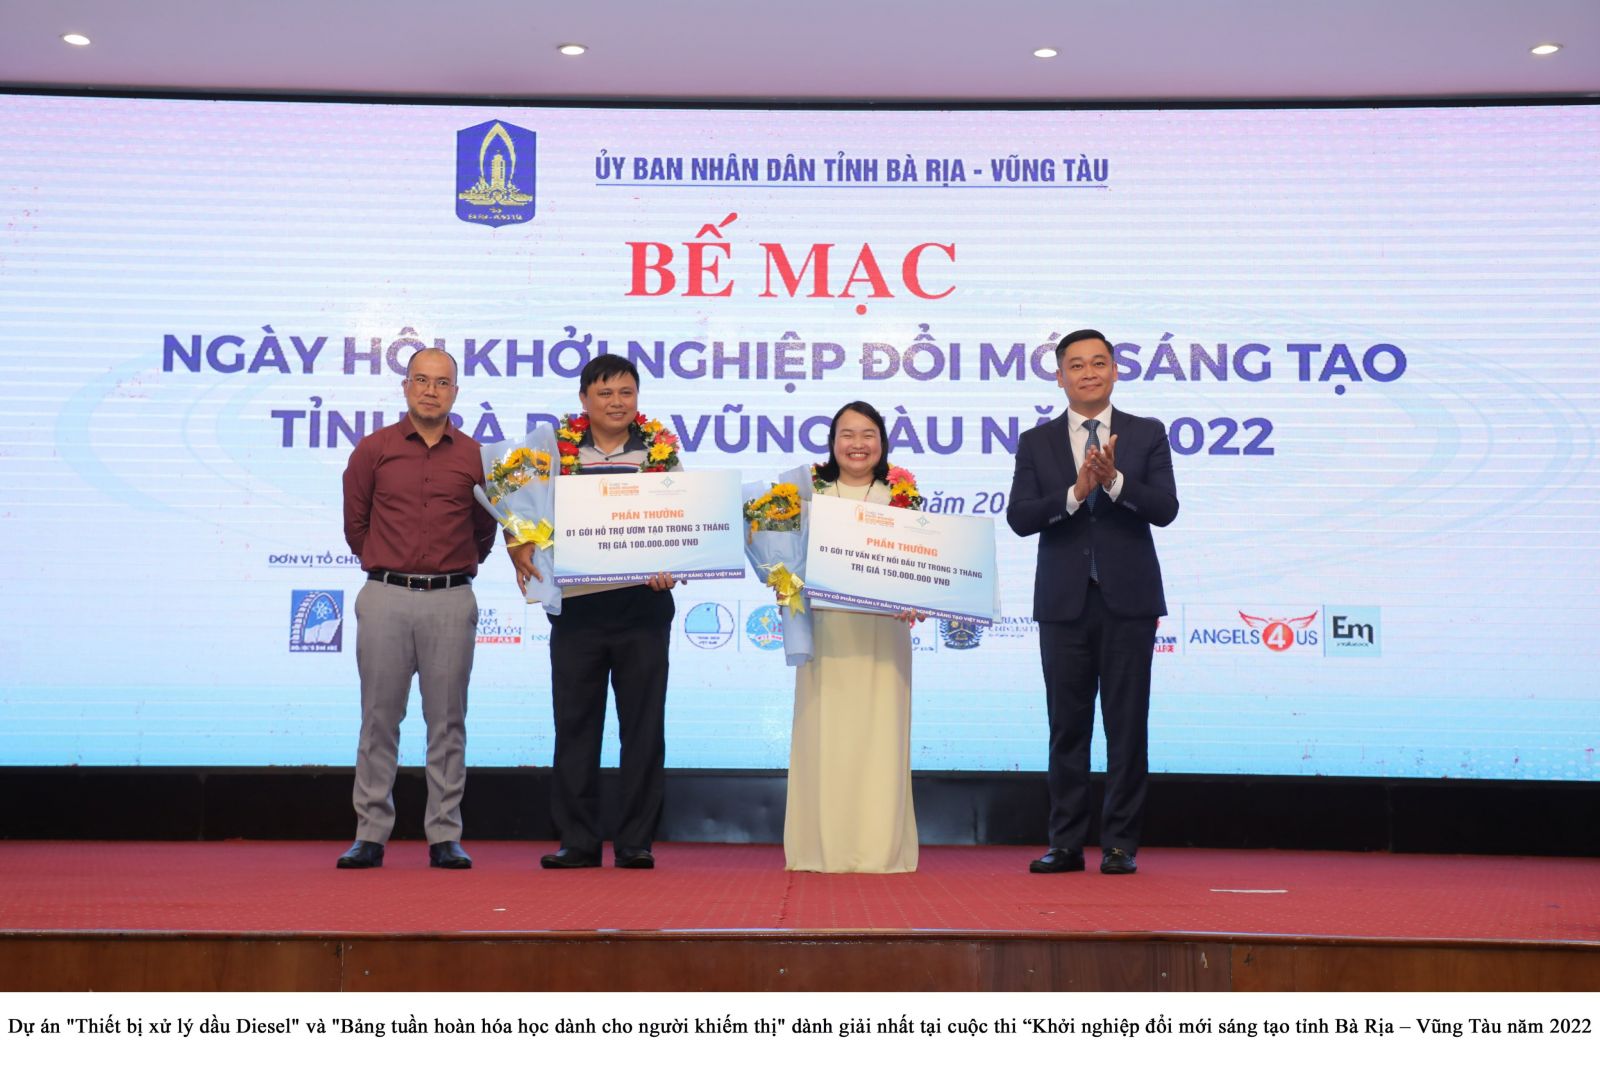 <p/>Ông Phạm Quang Nhật - Giám đốc Sở KH&CN (ngoài cùng bên phải) trao giải nhất cho tác giả dự án Thiết bị xử lý dầu Diesel và Bảng tuần hoàn hoá học dành cho người khiếm thị